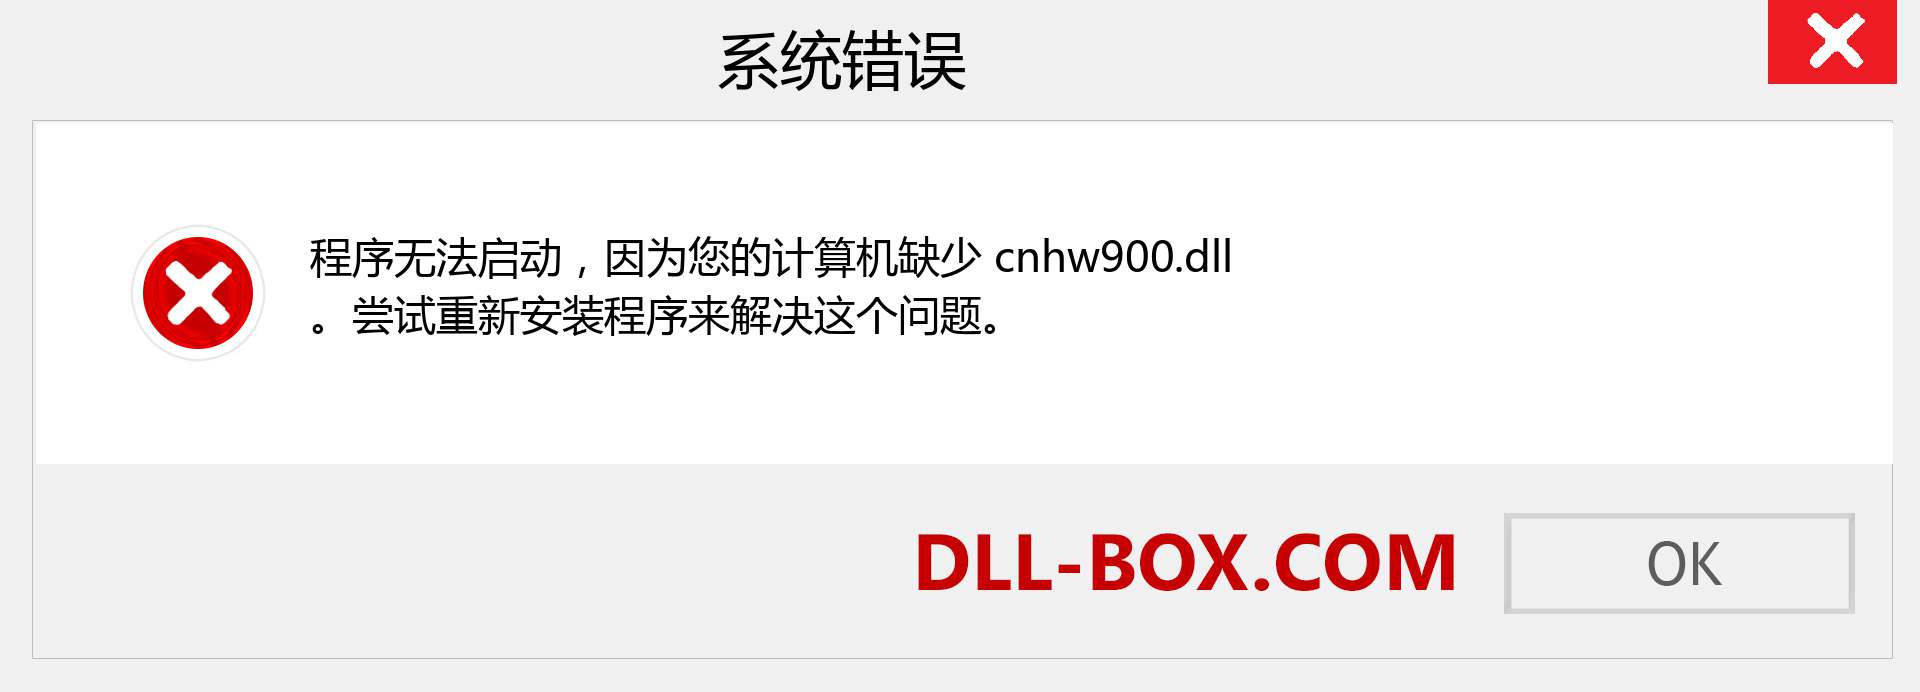 cnhw900.dll 文件丢失？。 适用于 Windows 7、8、10 的下载 - 修复 Windows、照片、图像上的 cnhw900 dll 丢失错误